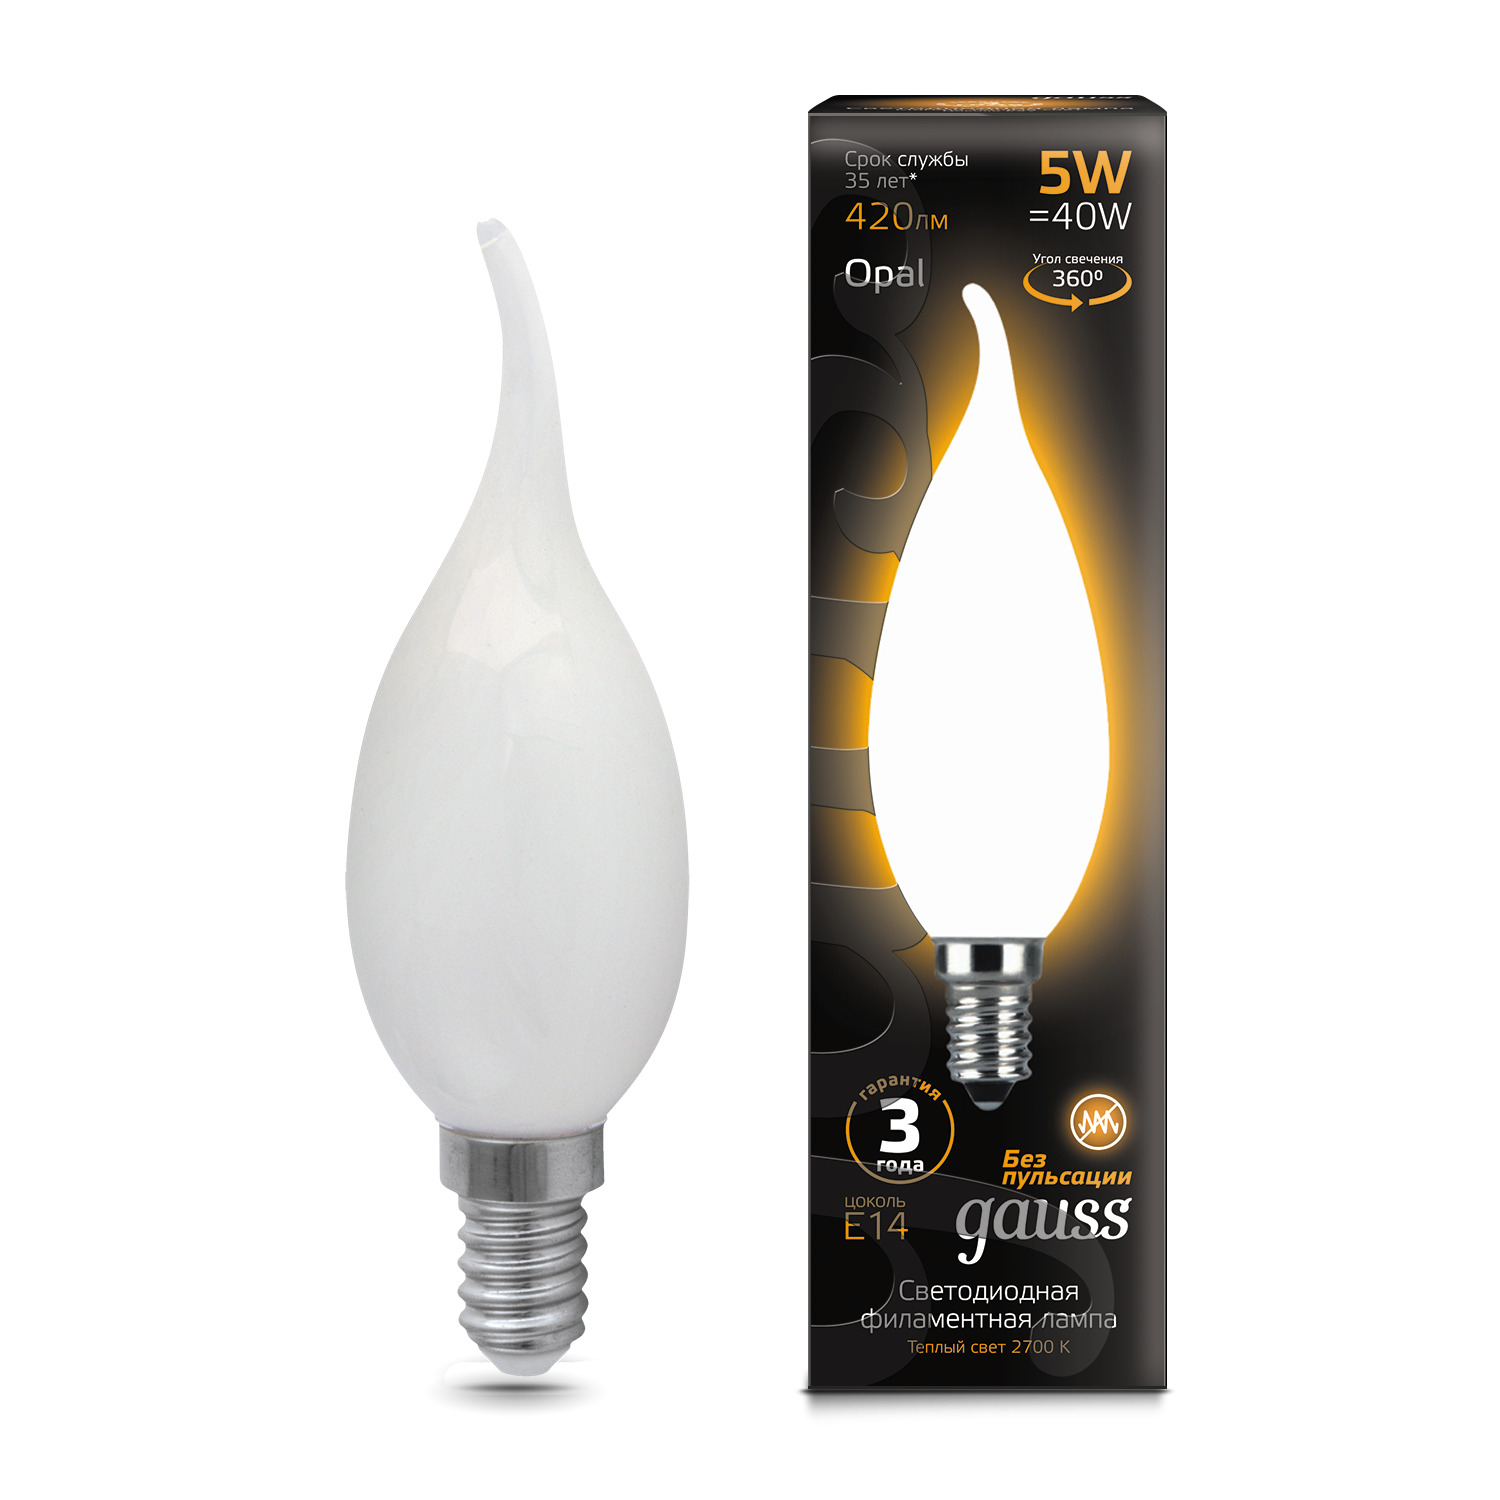 лампа gauss led filament свеча на ветру dimmable e14 5w 420lm 2700k 1 10 50 Лампа Gauss LED Filament Свеча на ветру OPAL E14 5W 420lm 2700К 1/10/50